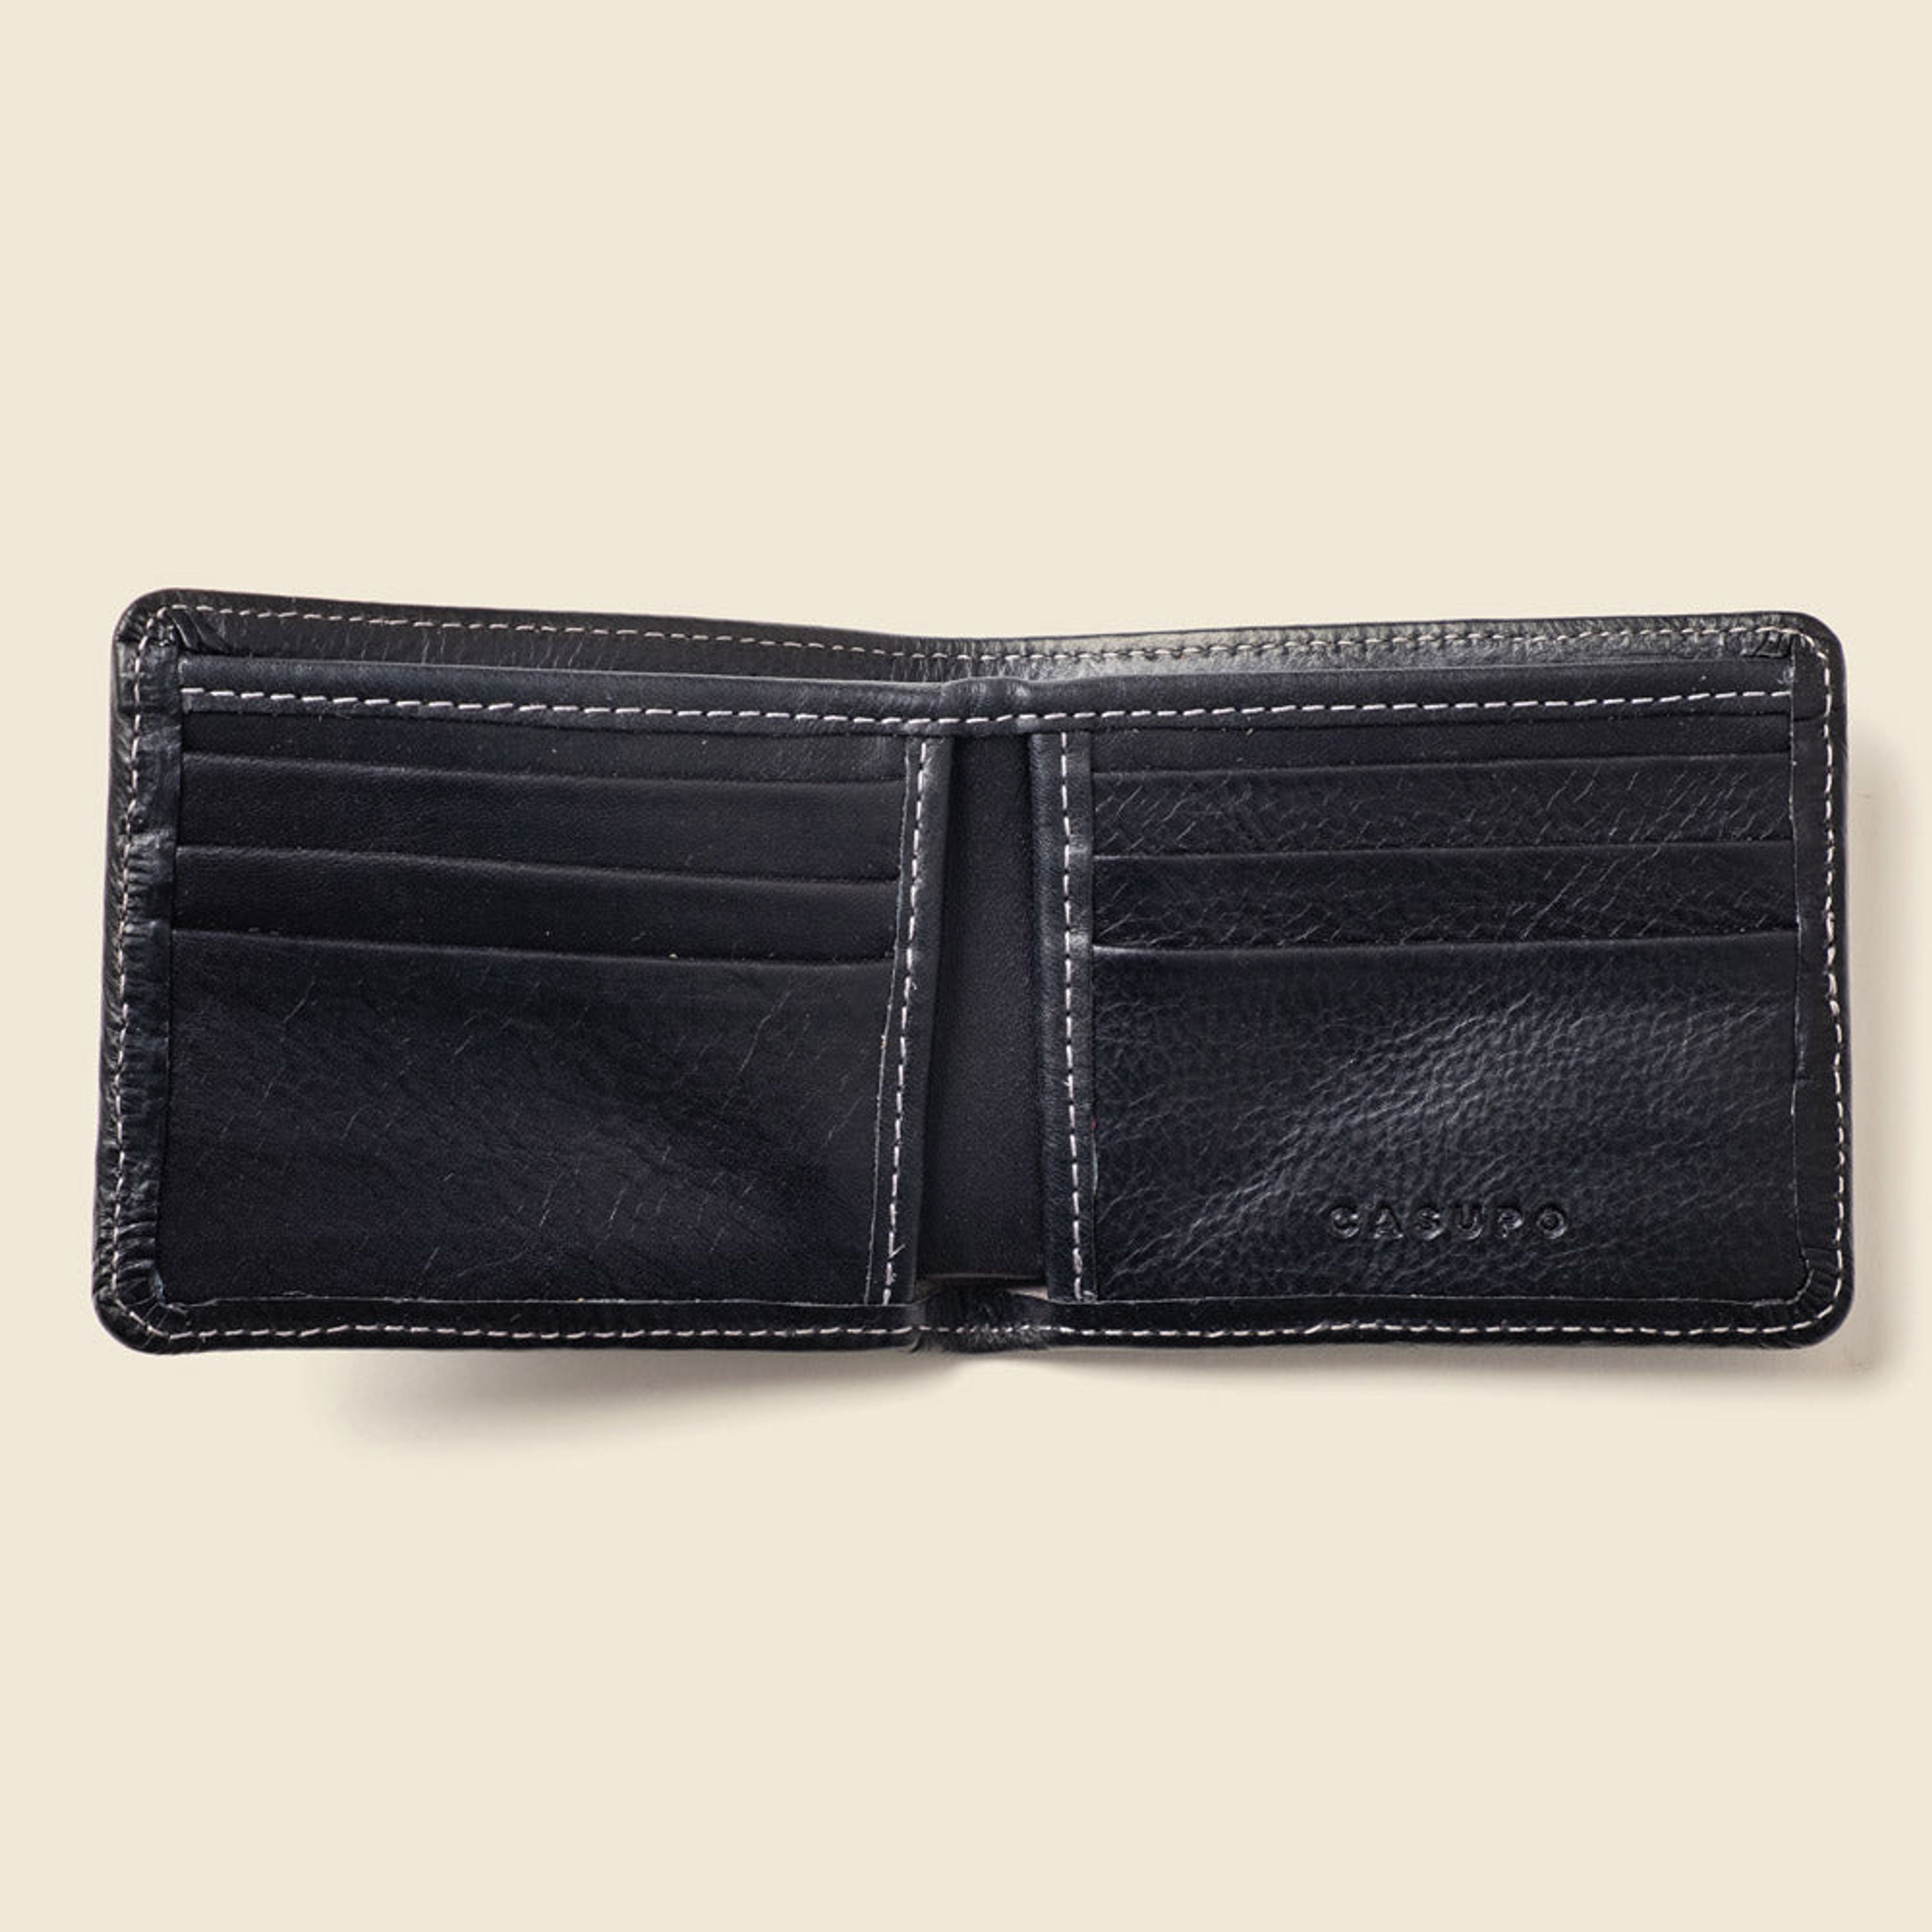 Large Billfold Wallet - Black